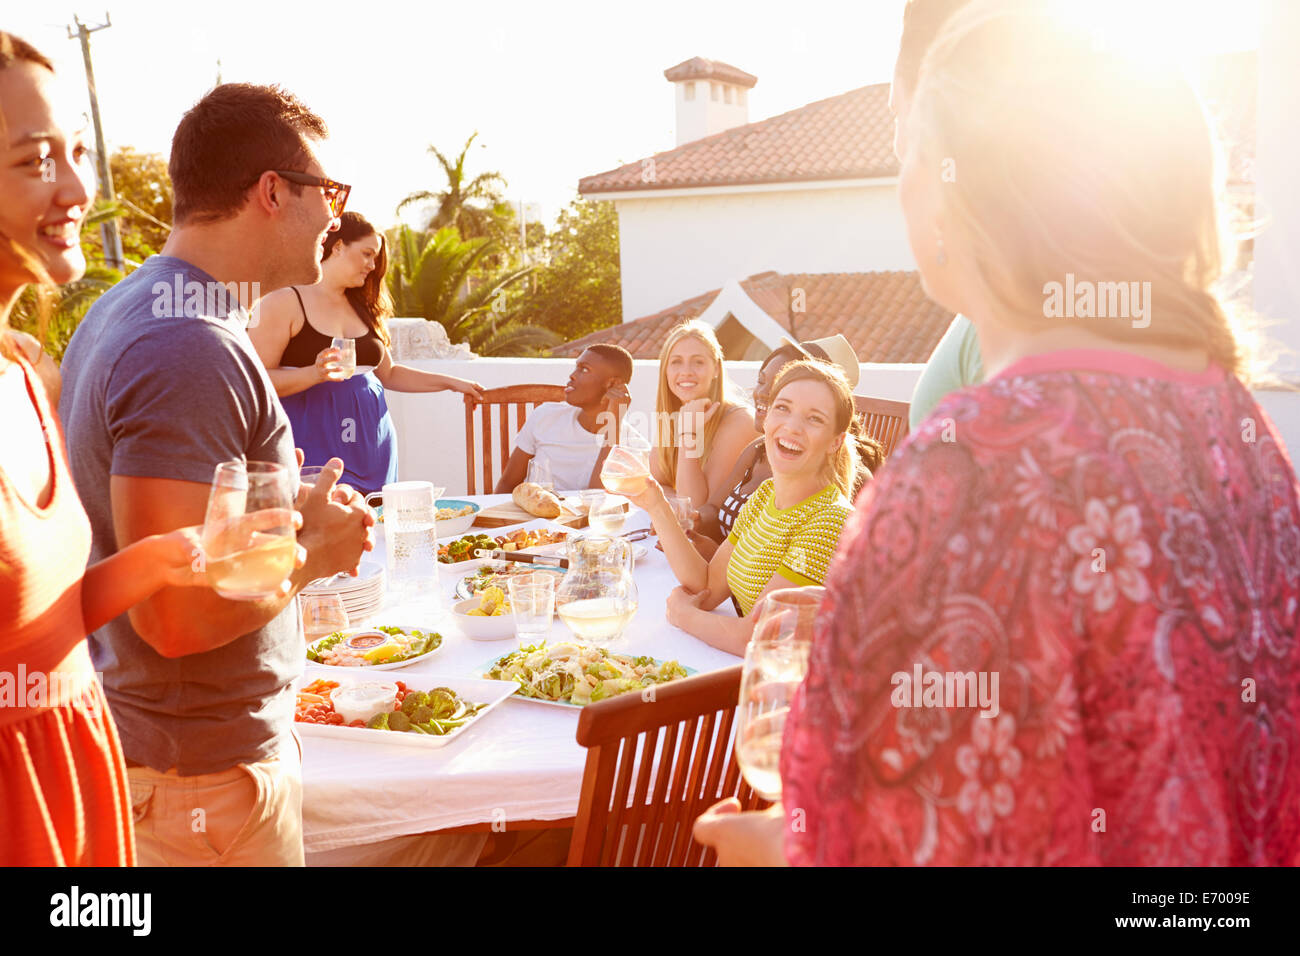 Groupe de jeunes bénéficiant de repas d'été en plein air Banque D'Images